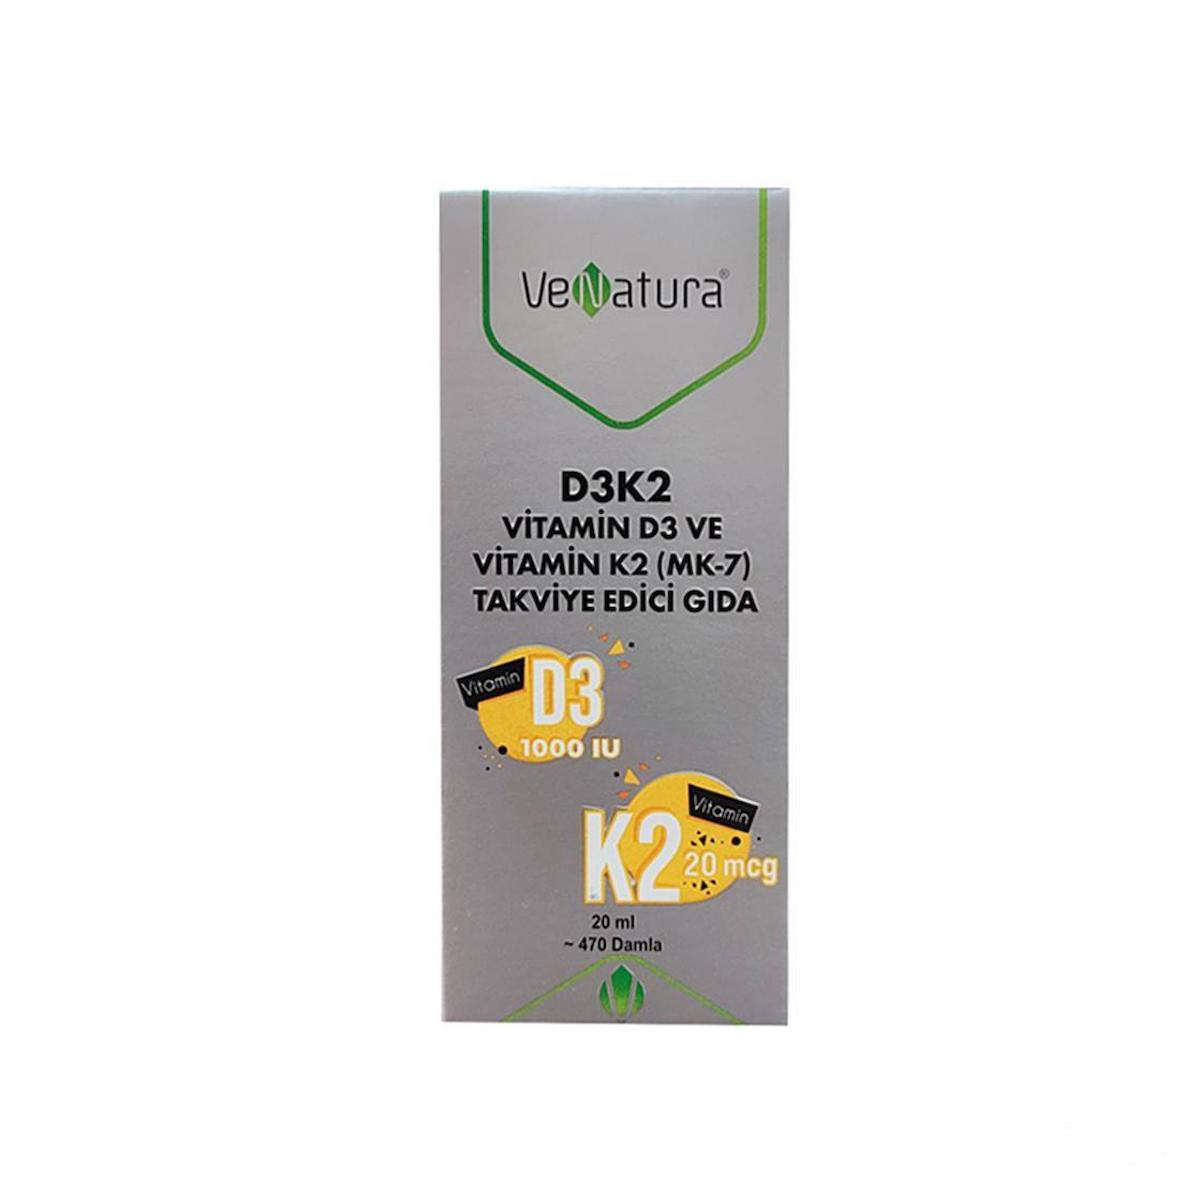 Venatura Vitamin D3 Unisex 20 ml